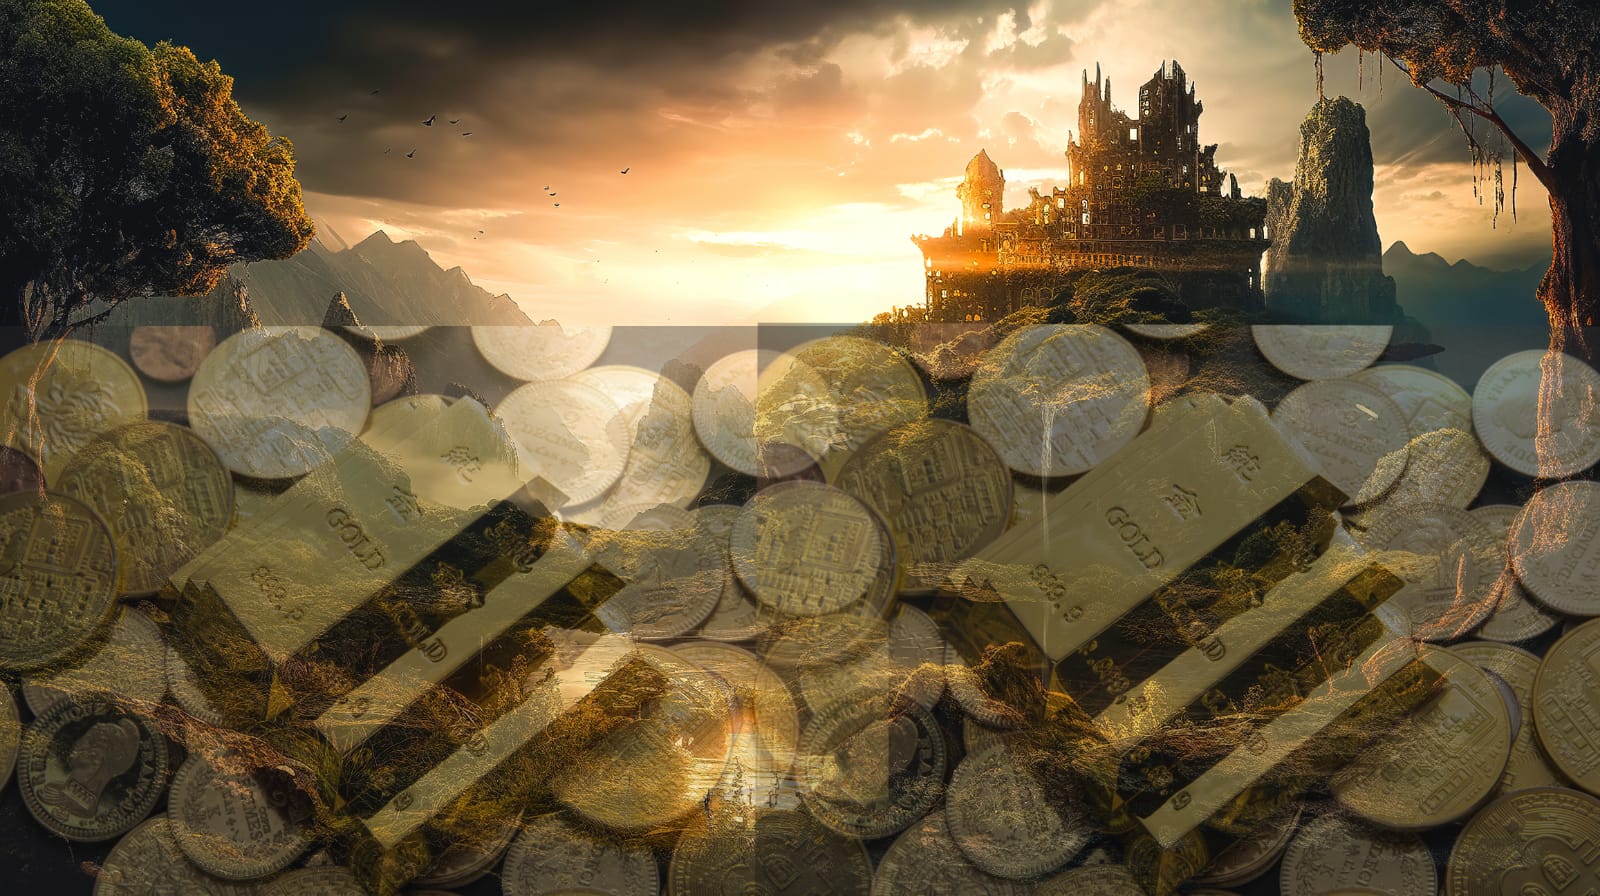 Menggemparkan! Simpanan Ratusan Ton Emas Kerajaan Sriwijaya Mulai Terendus